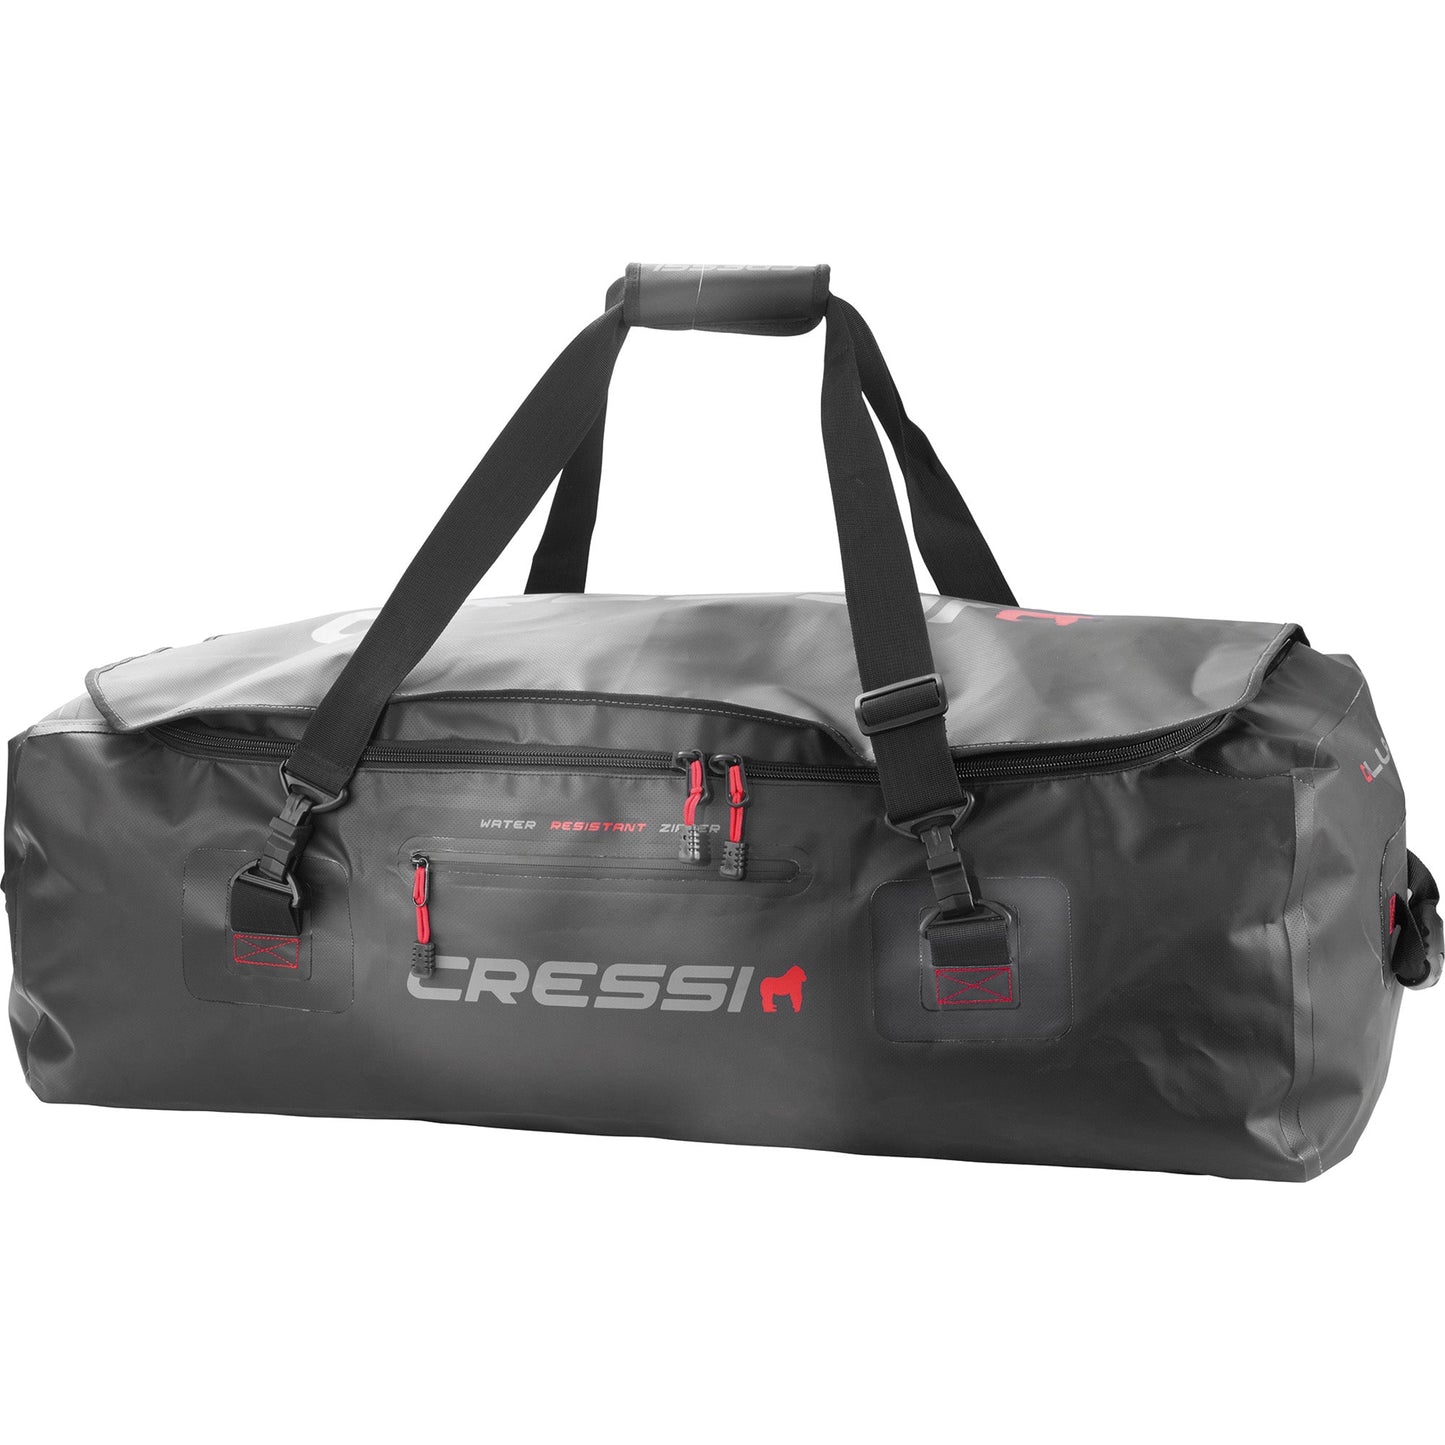 Cressi Gorilla Pro Bag